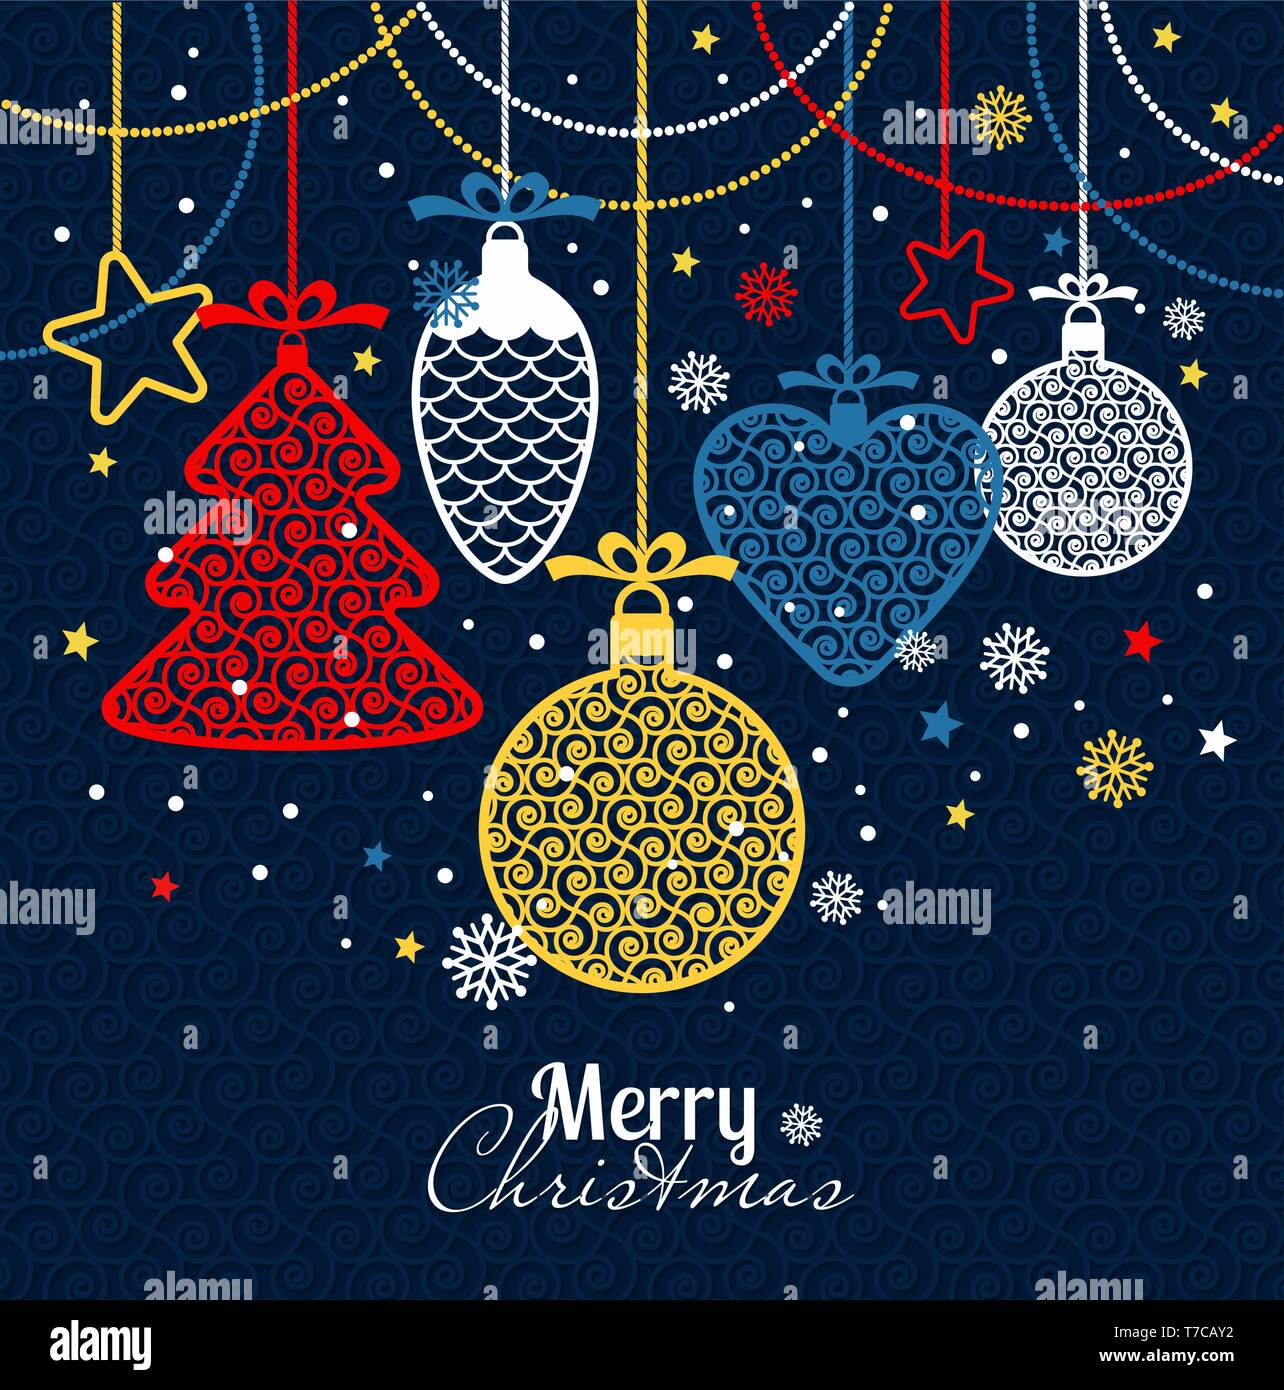 Silvester Grusskarten frohe Weihnachten. Helle neue Jahr Spielzeug auf einem blauen Hintergrund mit Schneeflocken. Stock Vektor